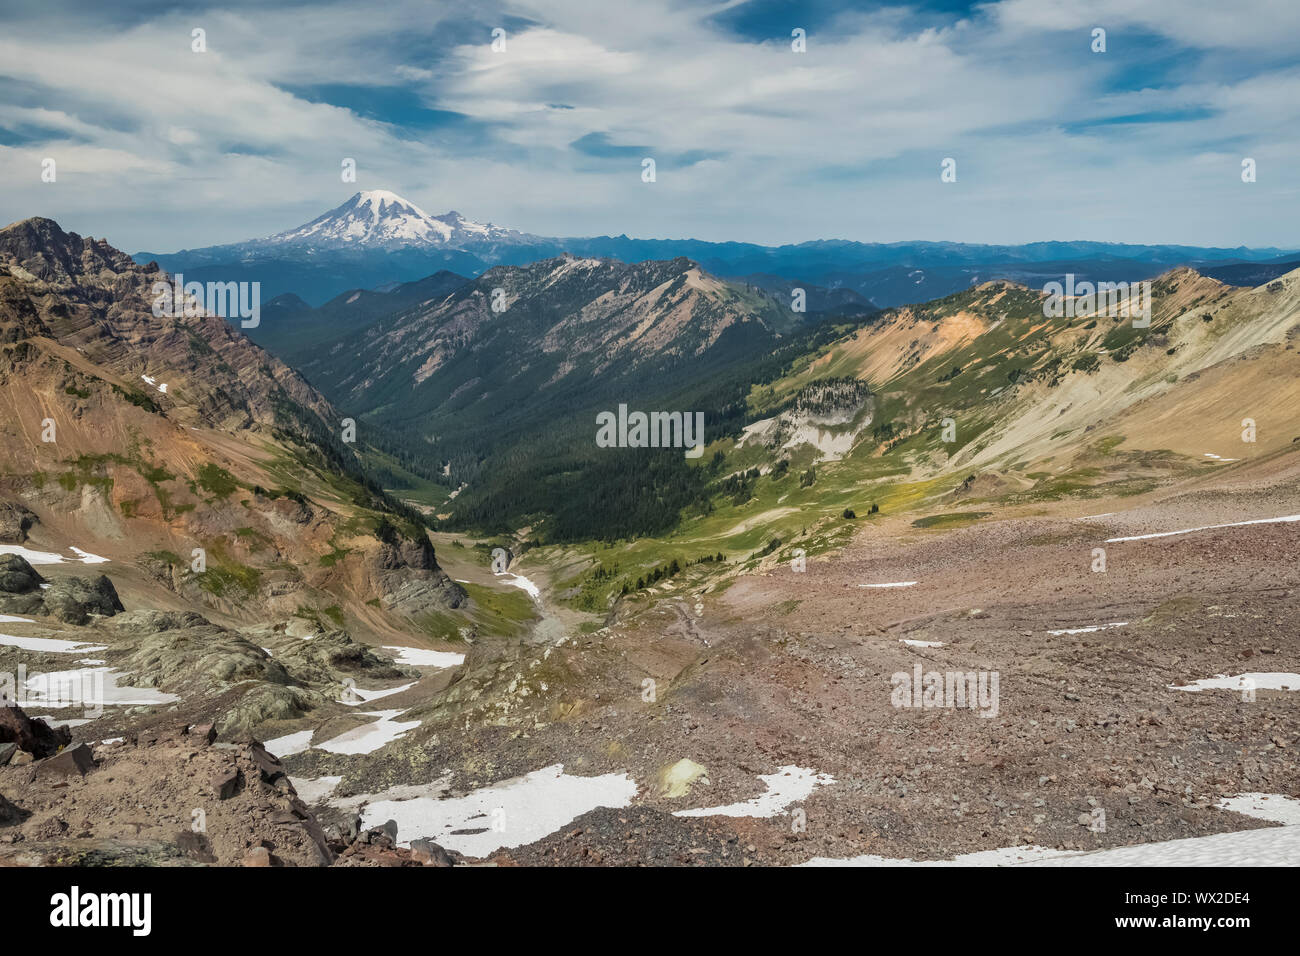 Le mont Rainier vu depuis le long de la Pacific Crest Trail dans le désert avec les roches de chèvre Goat Ridge à l'avant-plan, Gifford Pinchot Fores National Banque D'Images